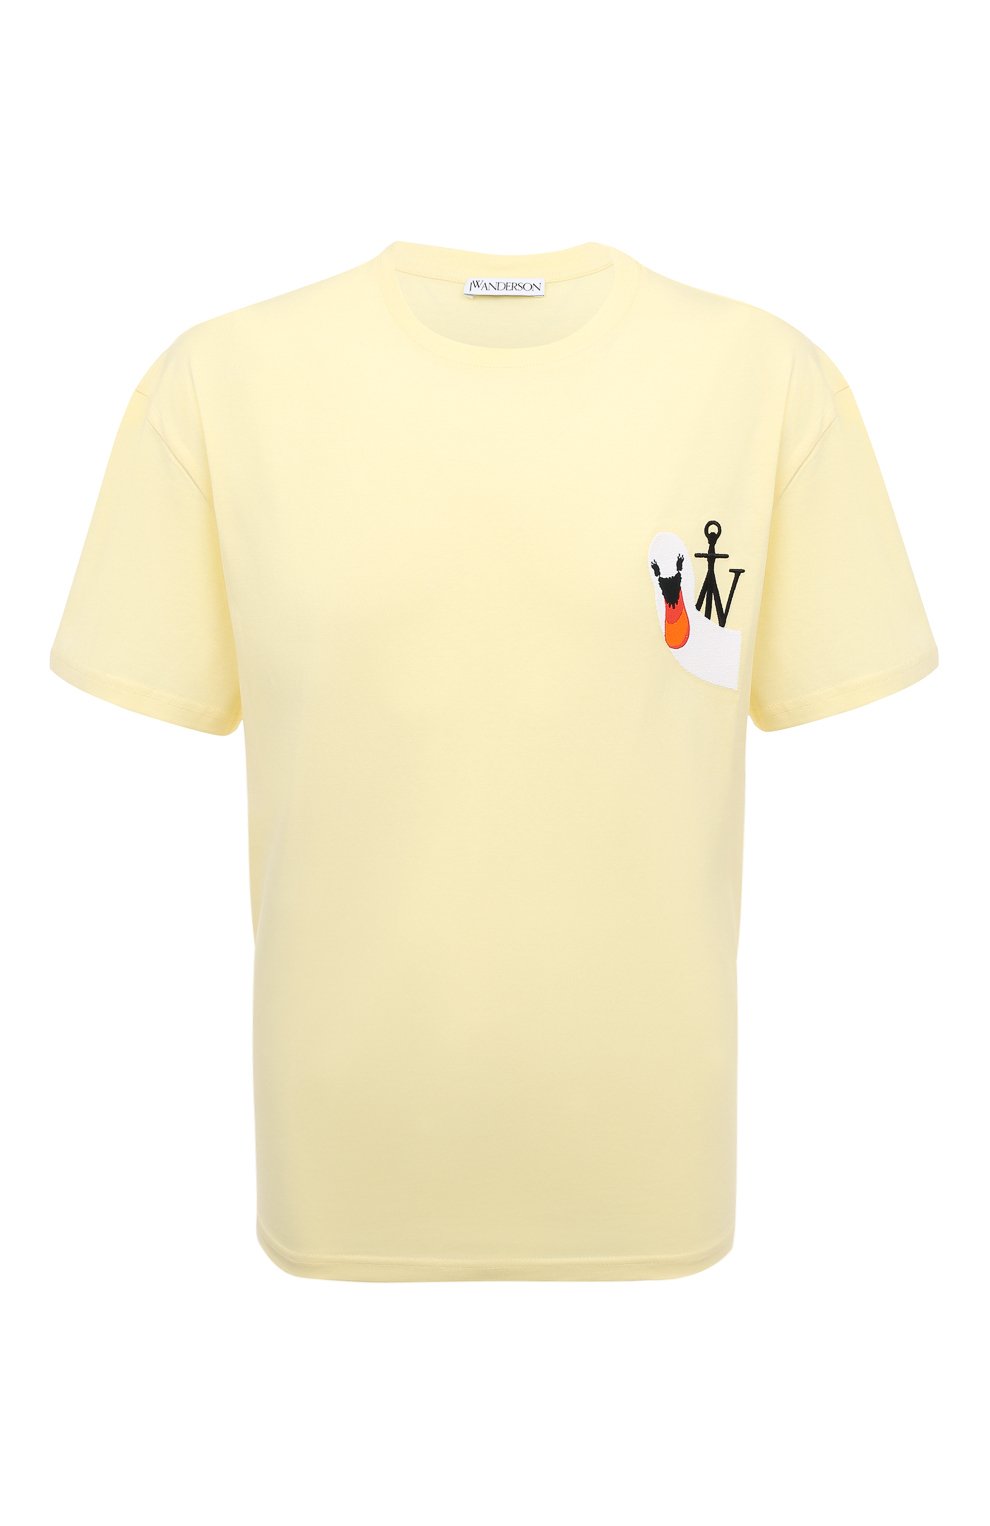 Футболки JW Anderson, Хлопковая футболка JW Anderson, Португалия, Жёлтый, Хлопок: 100%;, 13377453  - купить